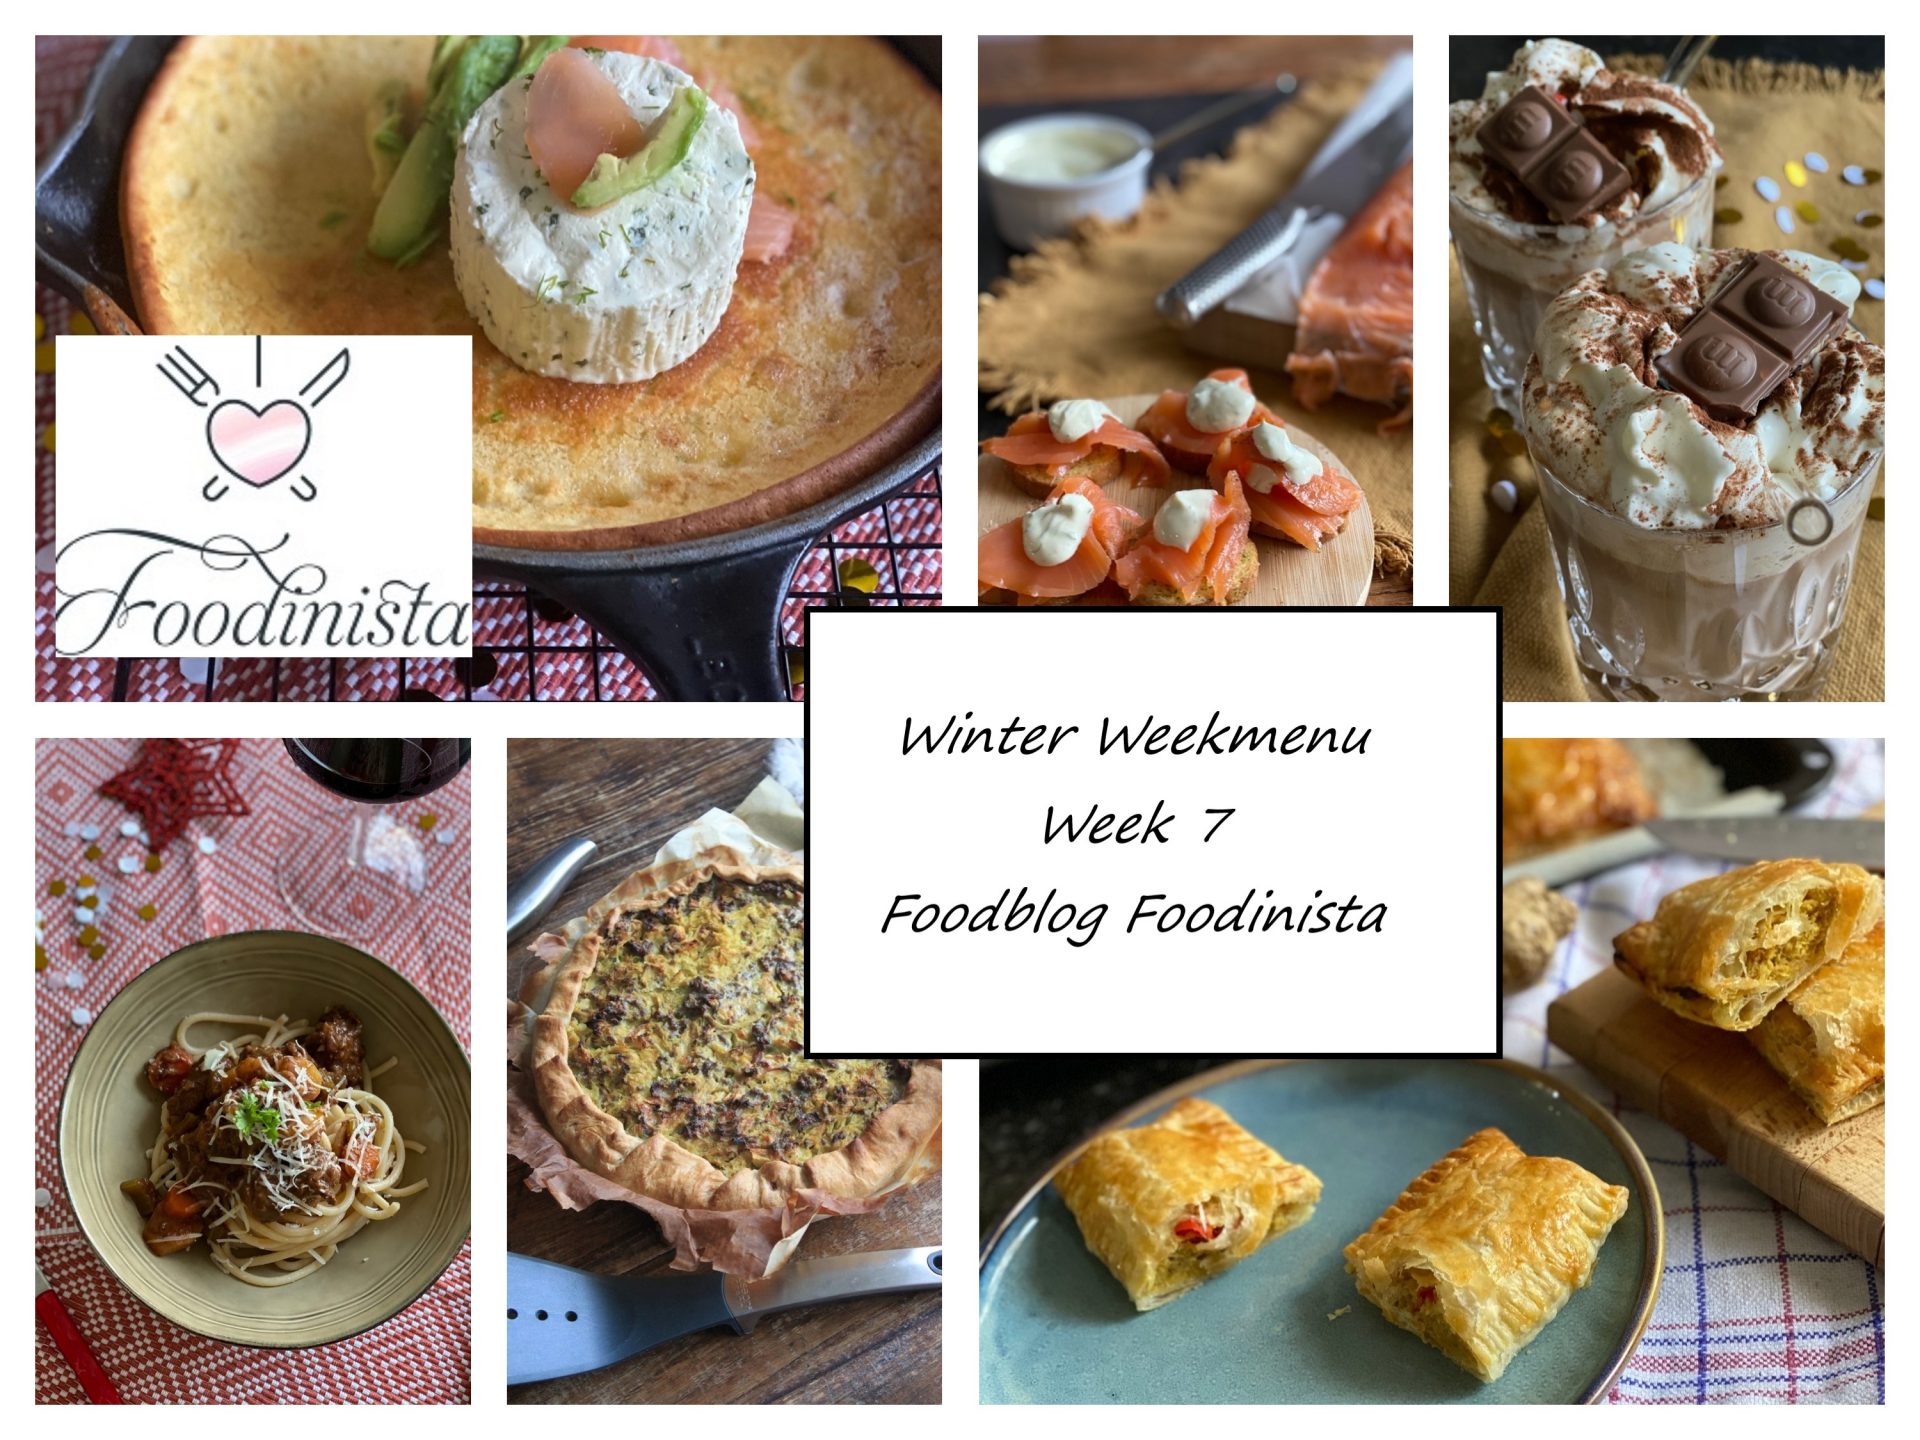 Foodblog Foodinista weekmenu – Wat eten we deze week? – Weekmenu Week 7 Winter 2021